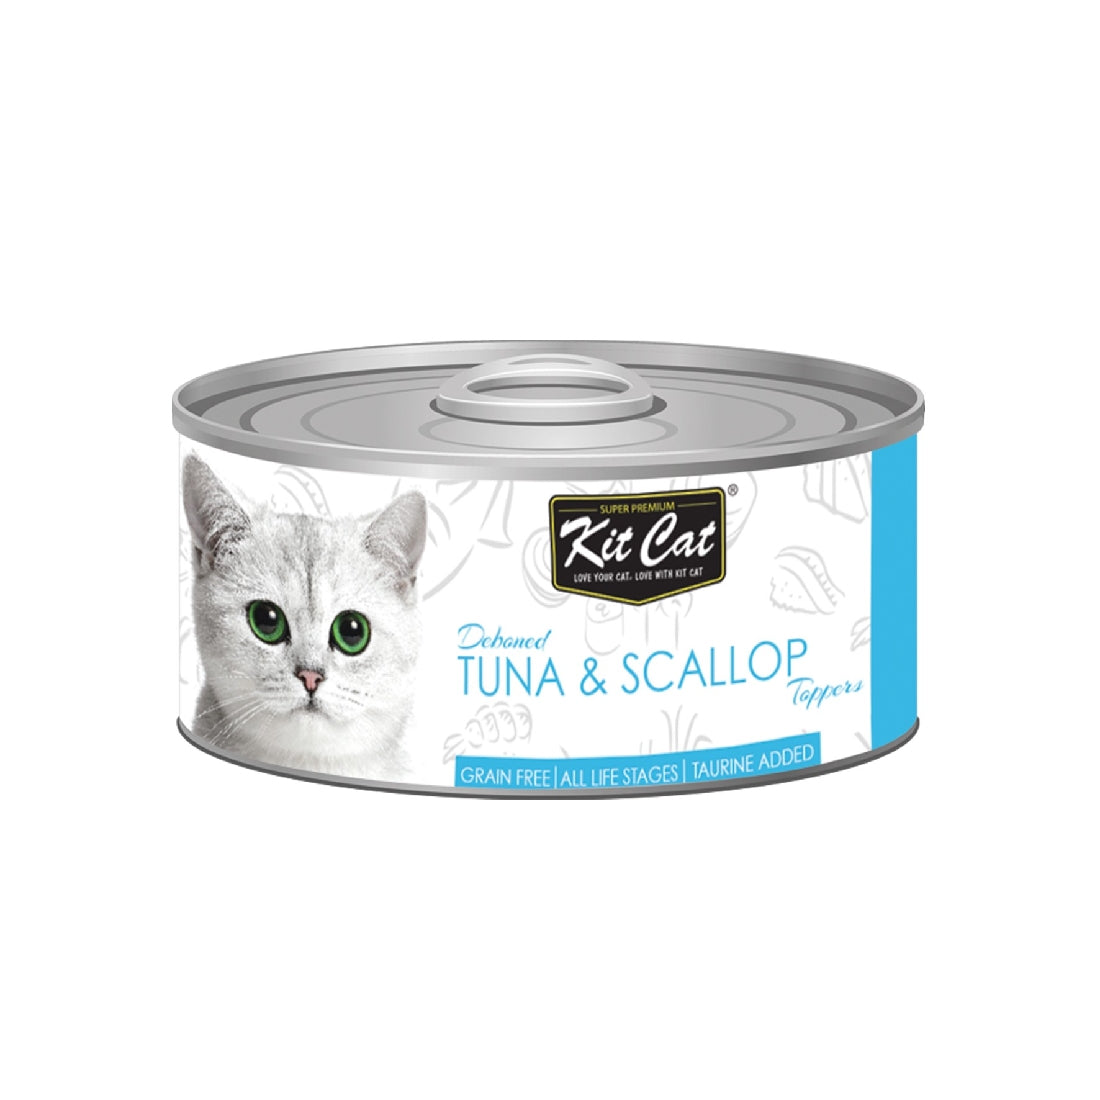 Kit Cat Tuna & Scallop Cat Food 80g